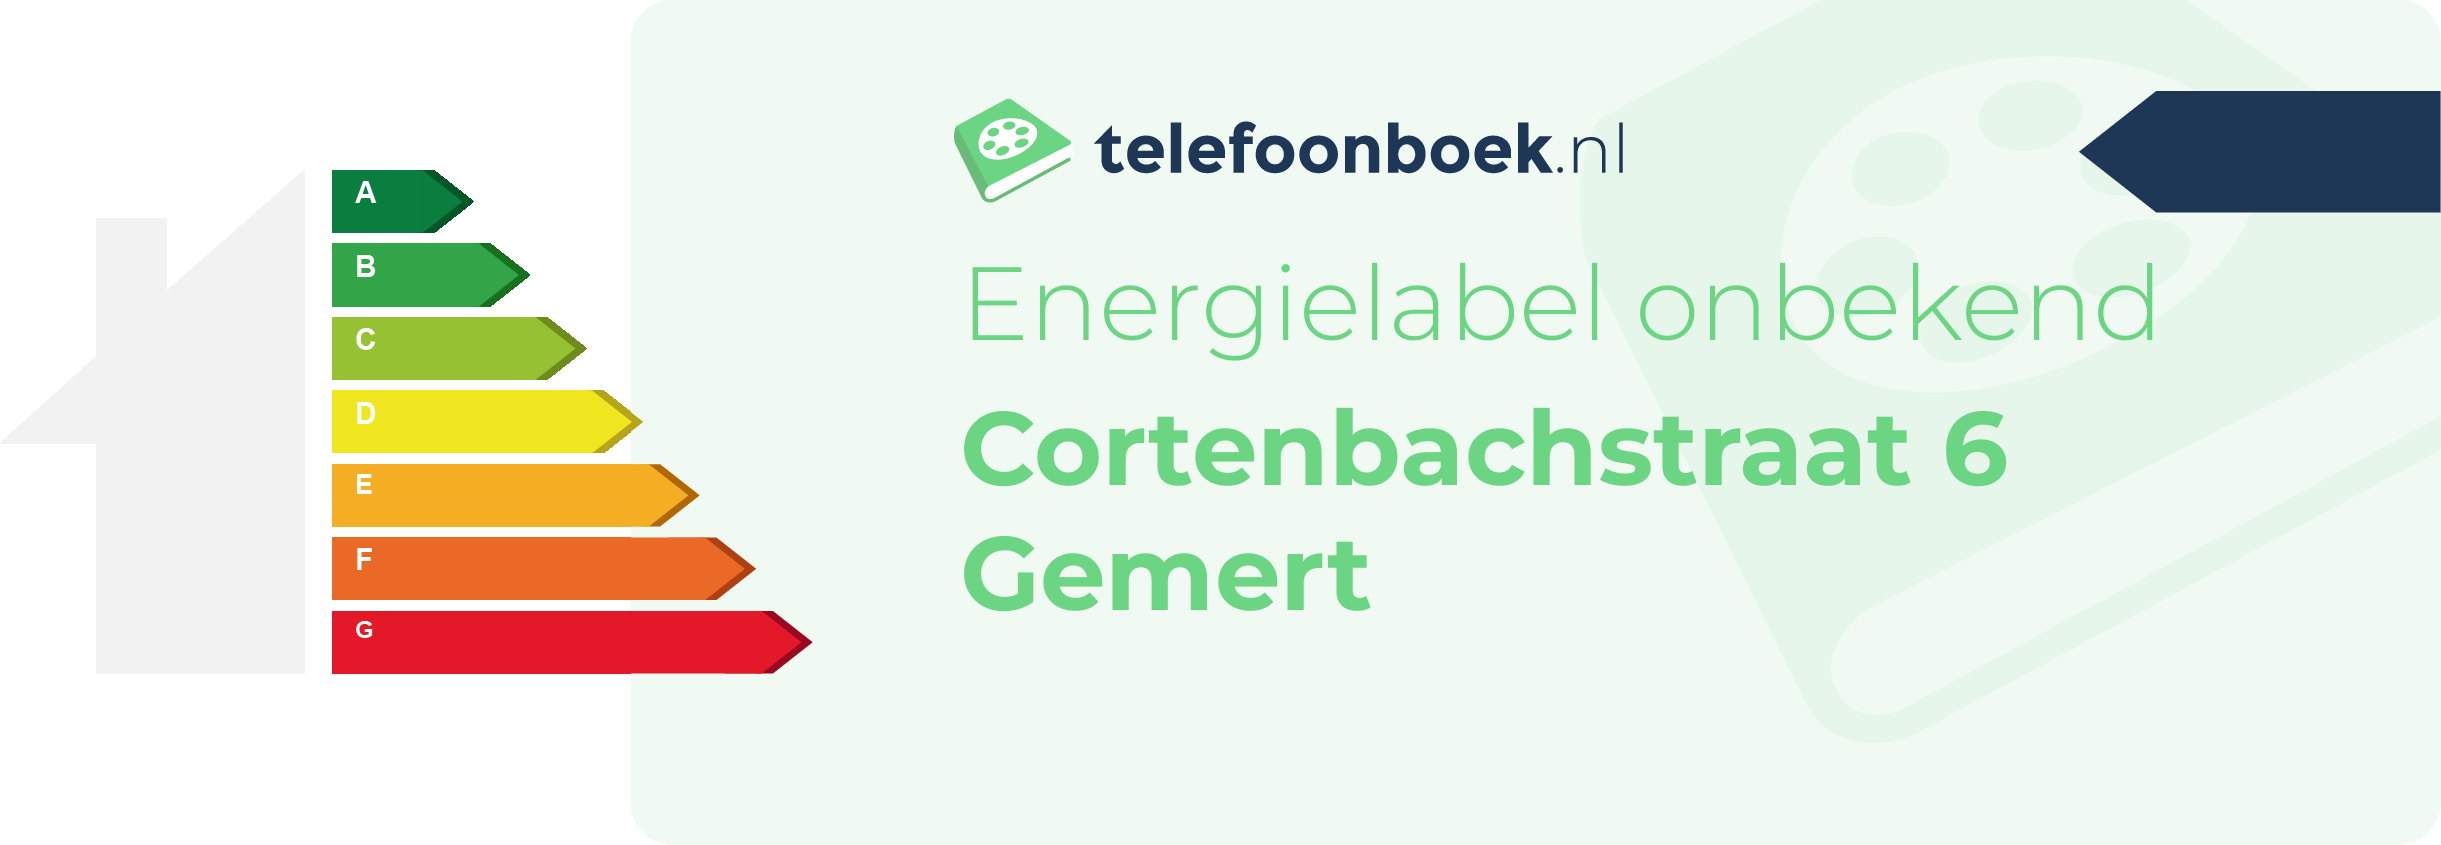 Energielabel Cortenbachstraat 6 Gemert